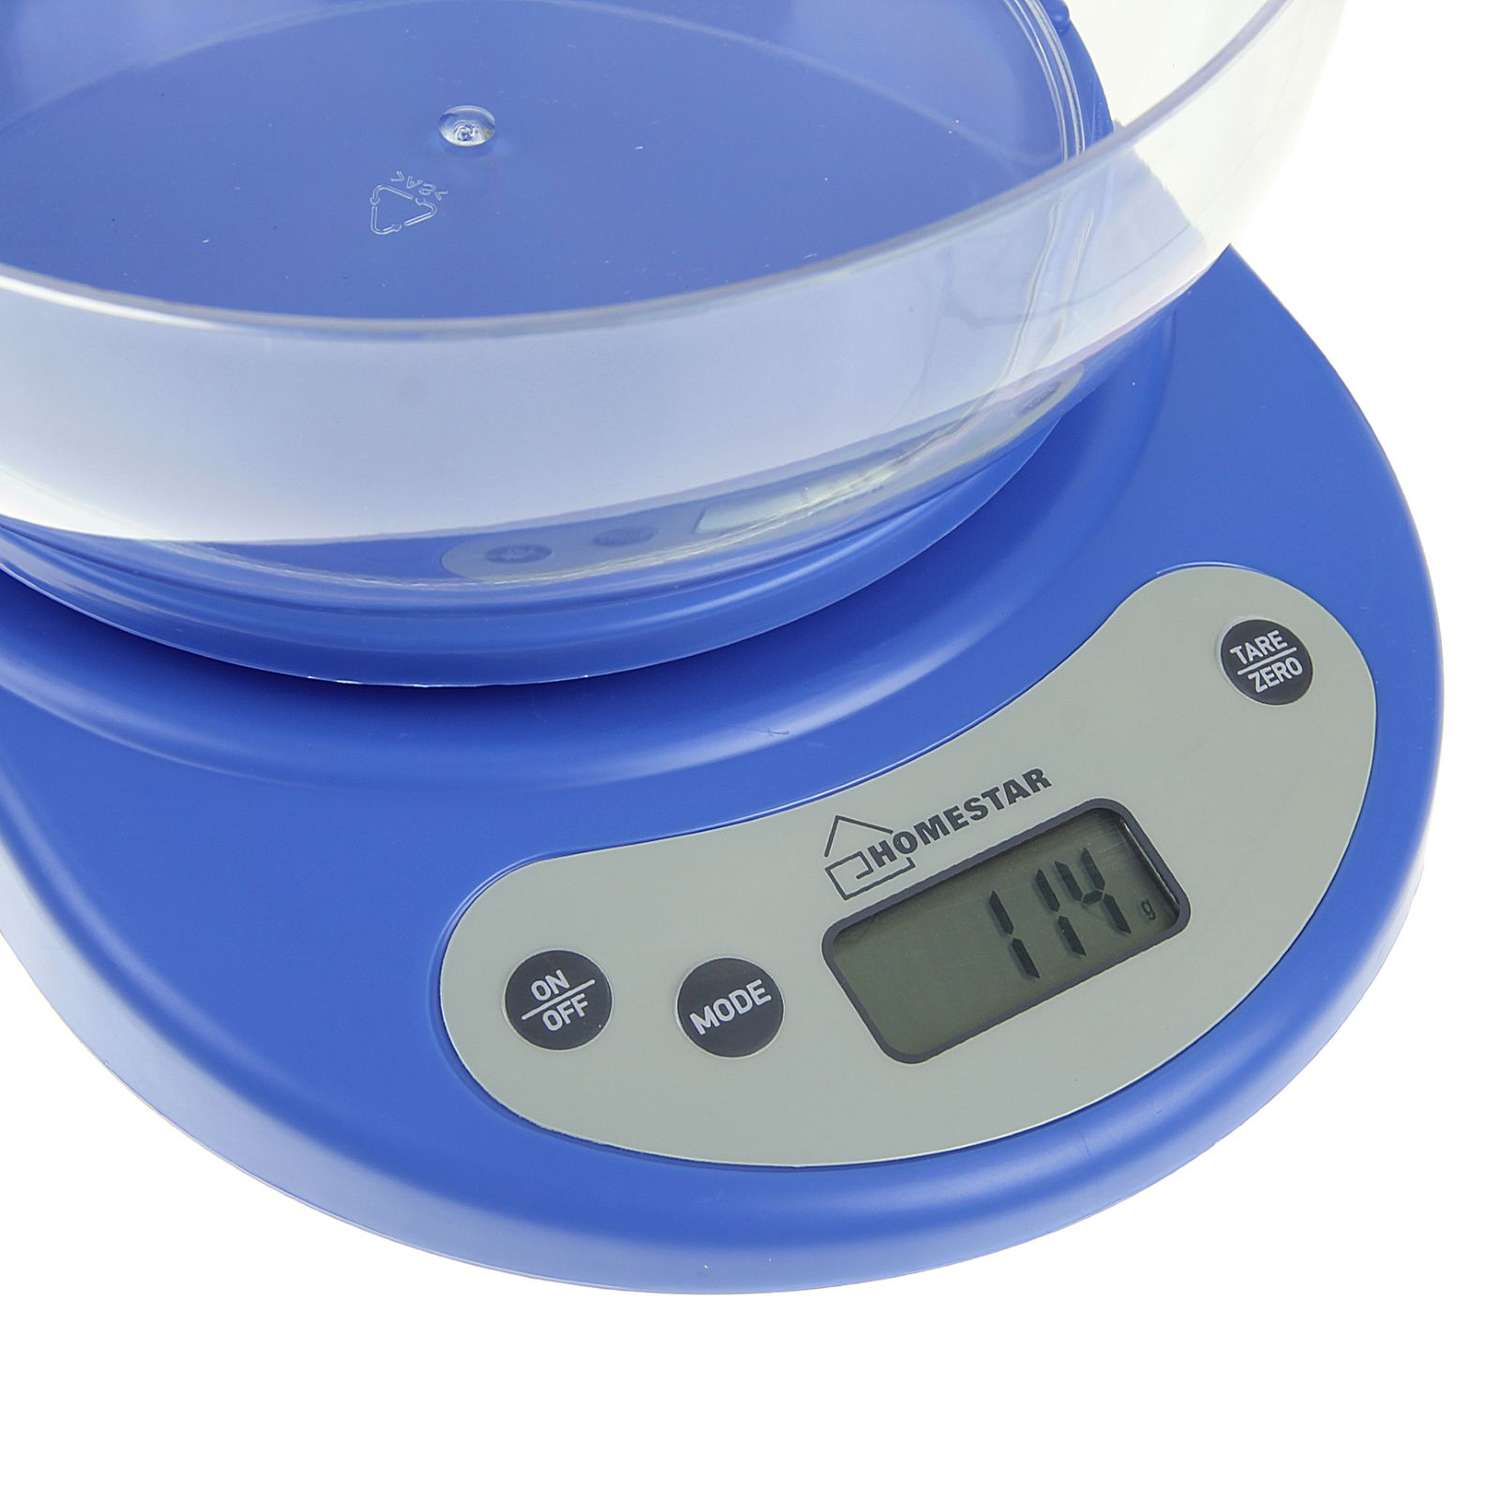 Весы кухонные Luazon Home HS-3001 электронные до 5 кг автоотключение голубые - фото 2